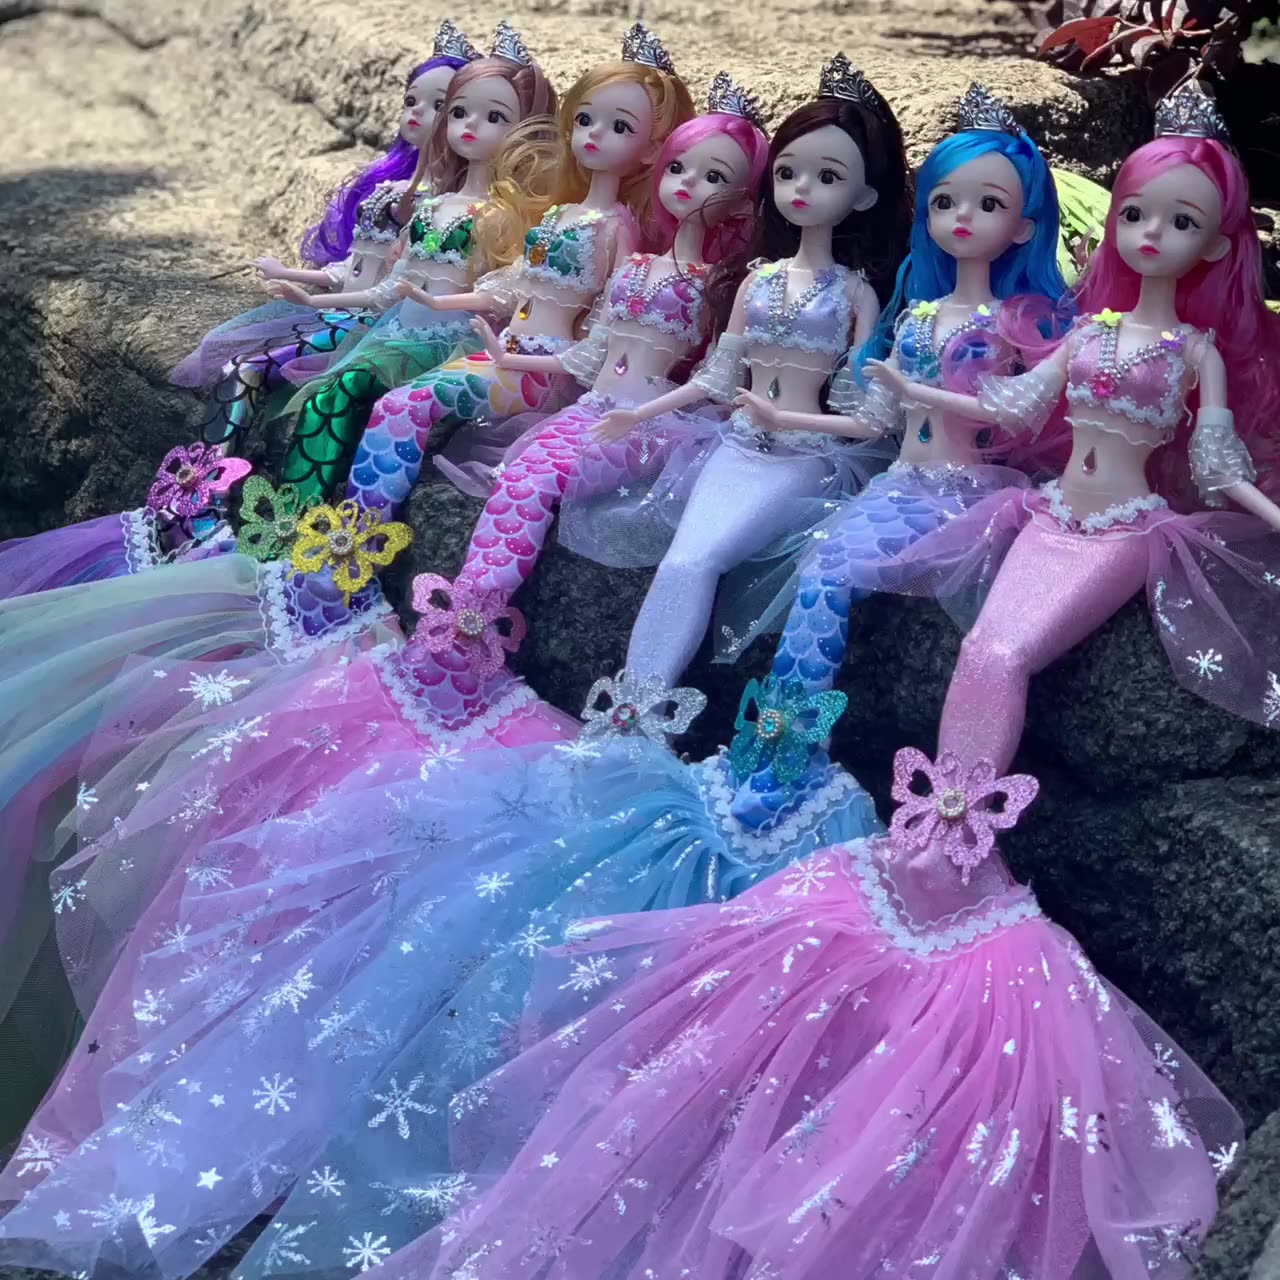 美人鱼娃娃公主芭洋娃娃比套装玩偶女孩芭儿童比公主玩具礼物人鱼